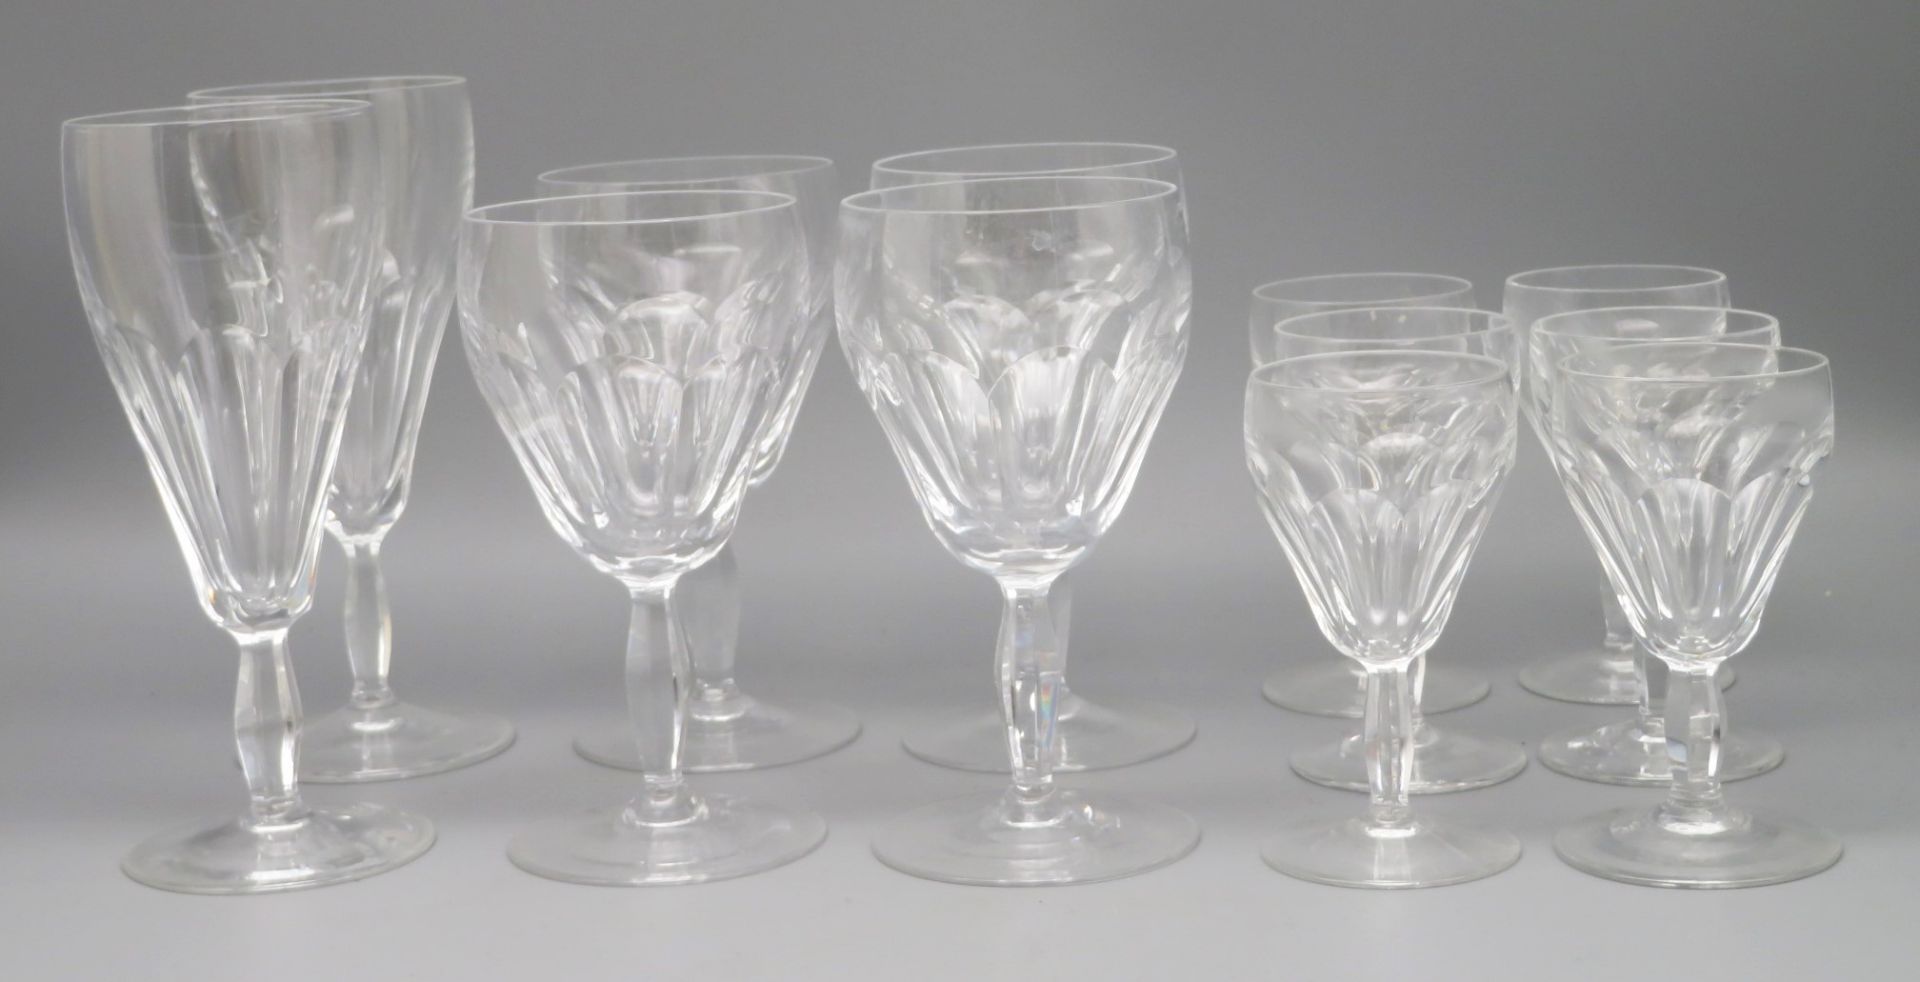 12 teiliges Glasset, 1. Hälfte 20. Jahrhundert, bestehend aus 2 Wein-, 4 Südwein- und 6 Likörgläser